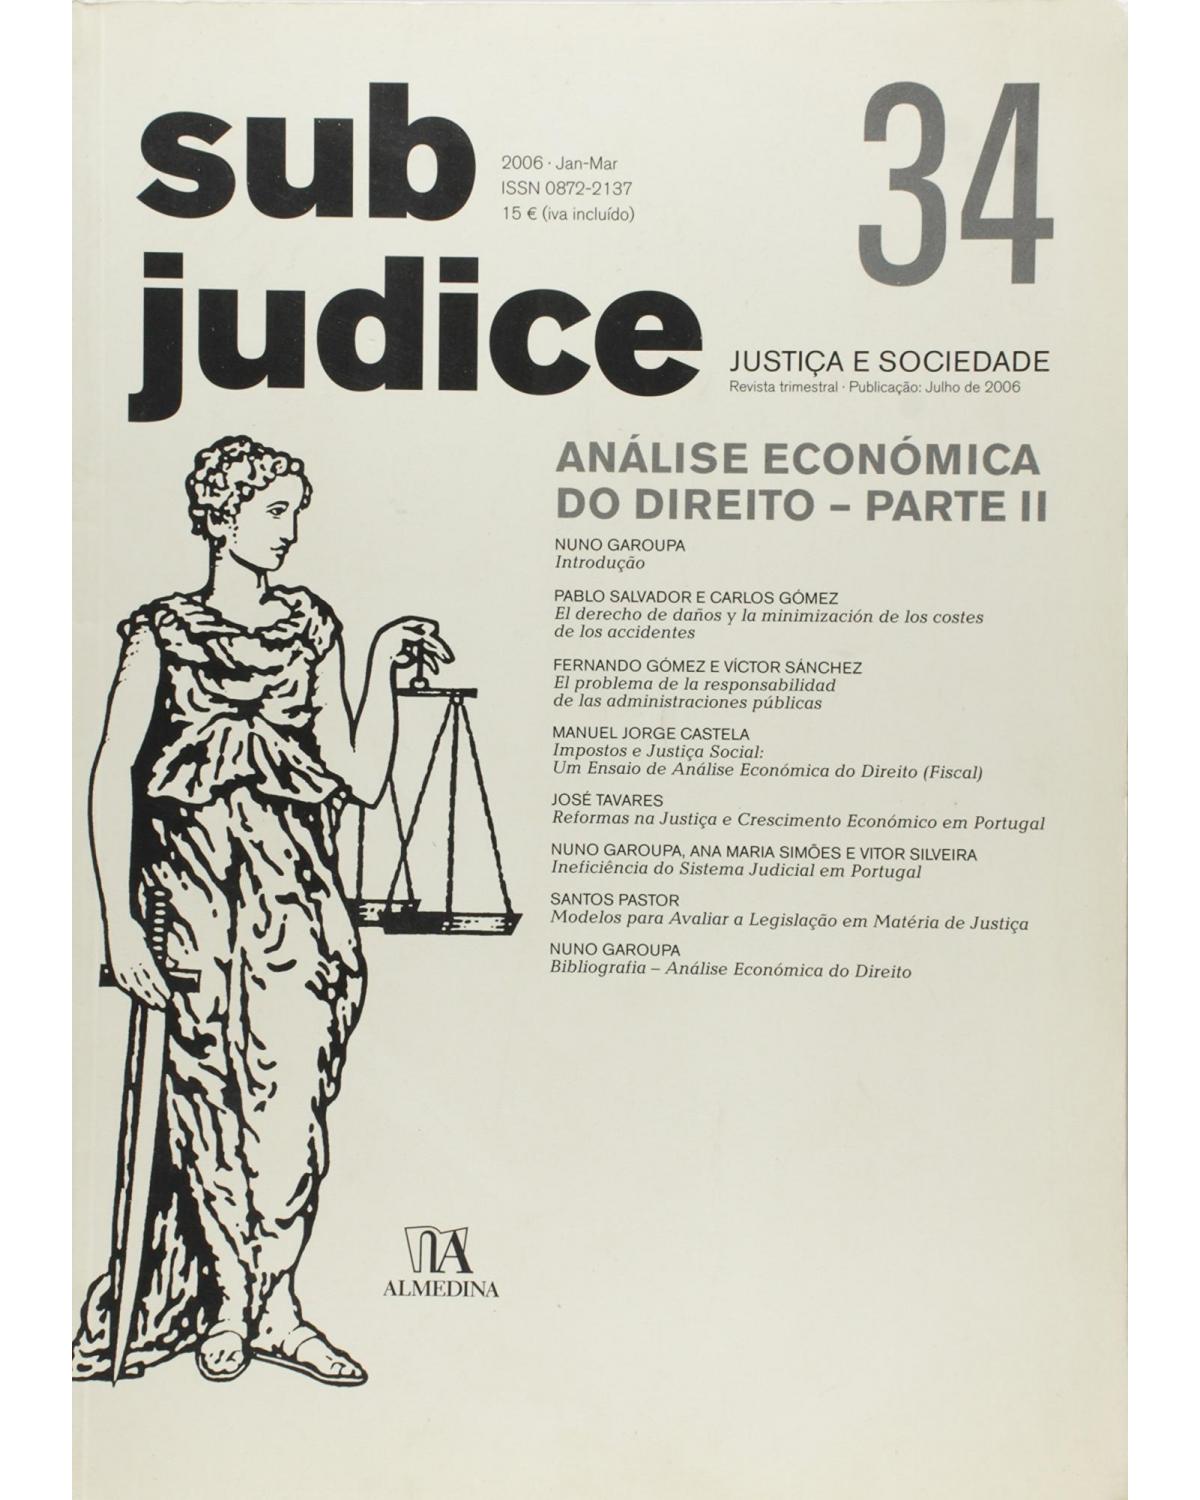 Sub judice - Volume 34: análise económica do direito - Parte II - 1ª Edição | 2006